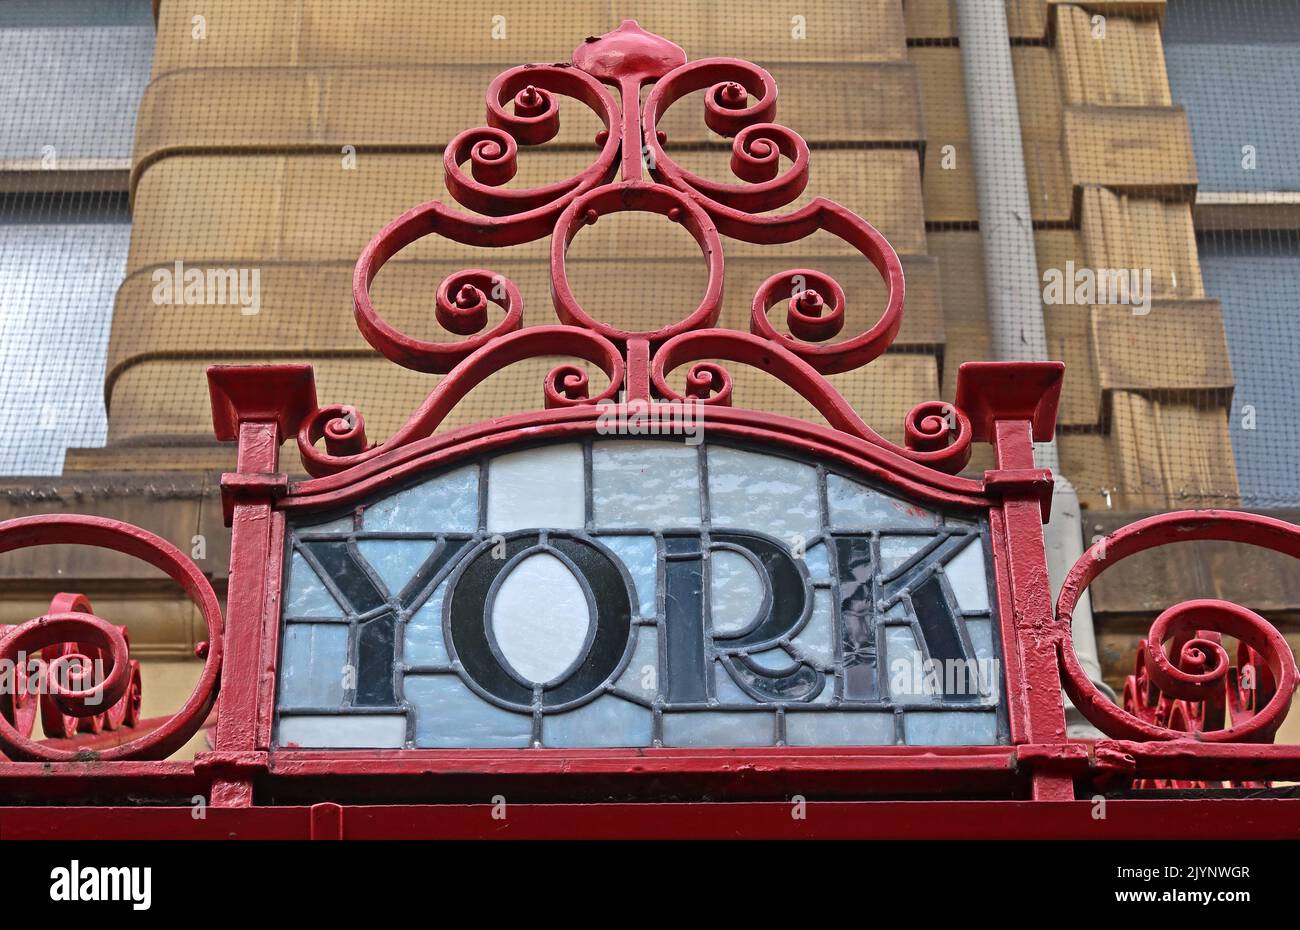 York - Jugendstil, Schriftzüge, Wörter, die M&LR- und L&YR-Ziele auf einem kunstvollen Glas- und Eisendach zeigen, Bahnhof Manchester Victoria Stockfoto